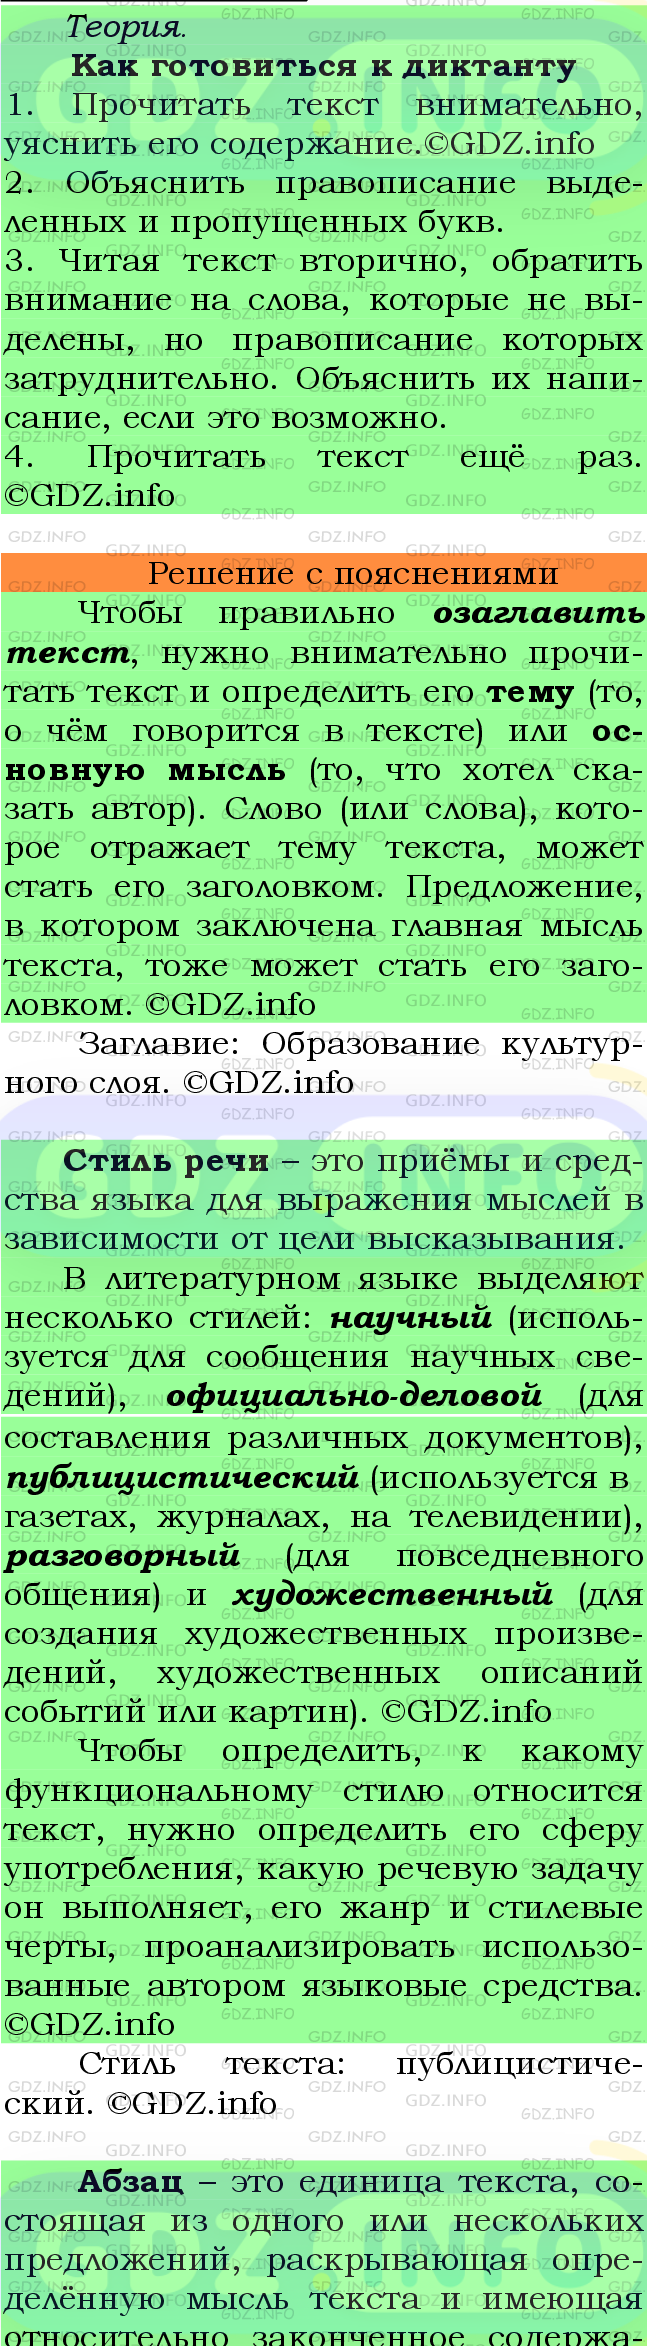 Фото подробного решения: Номер №483 из ГДЗ по Русскому языку 7 класс: Ладыженская Т.А.